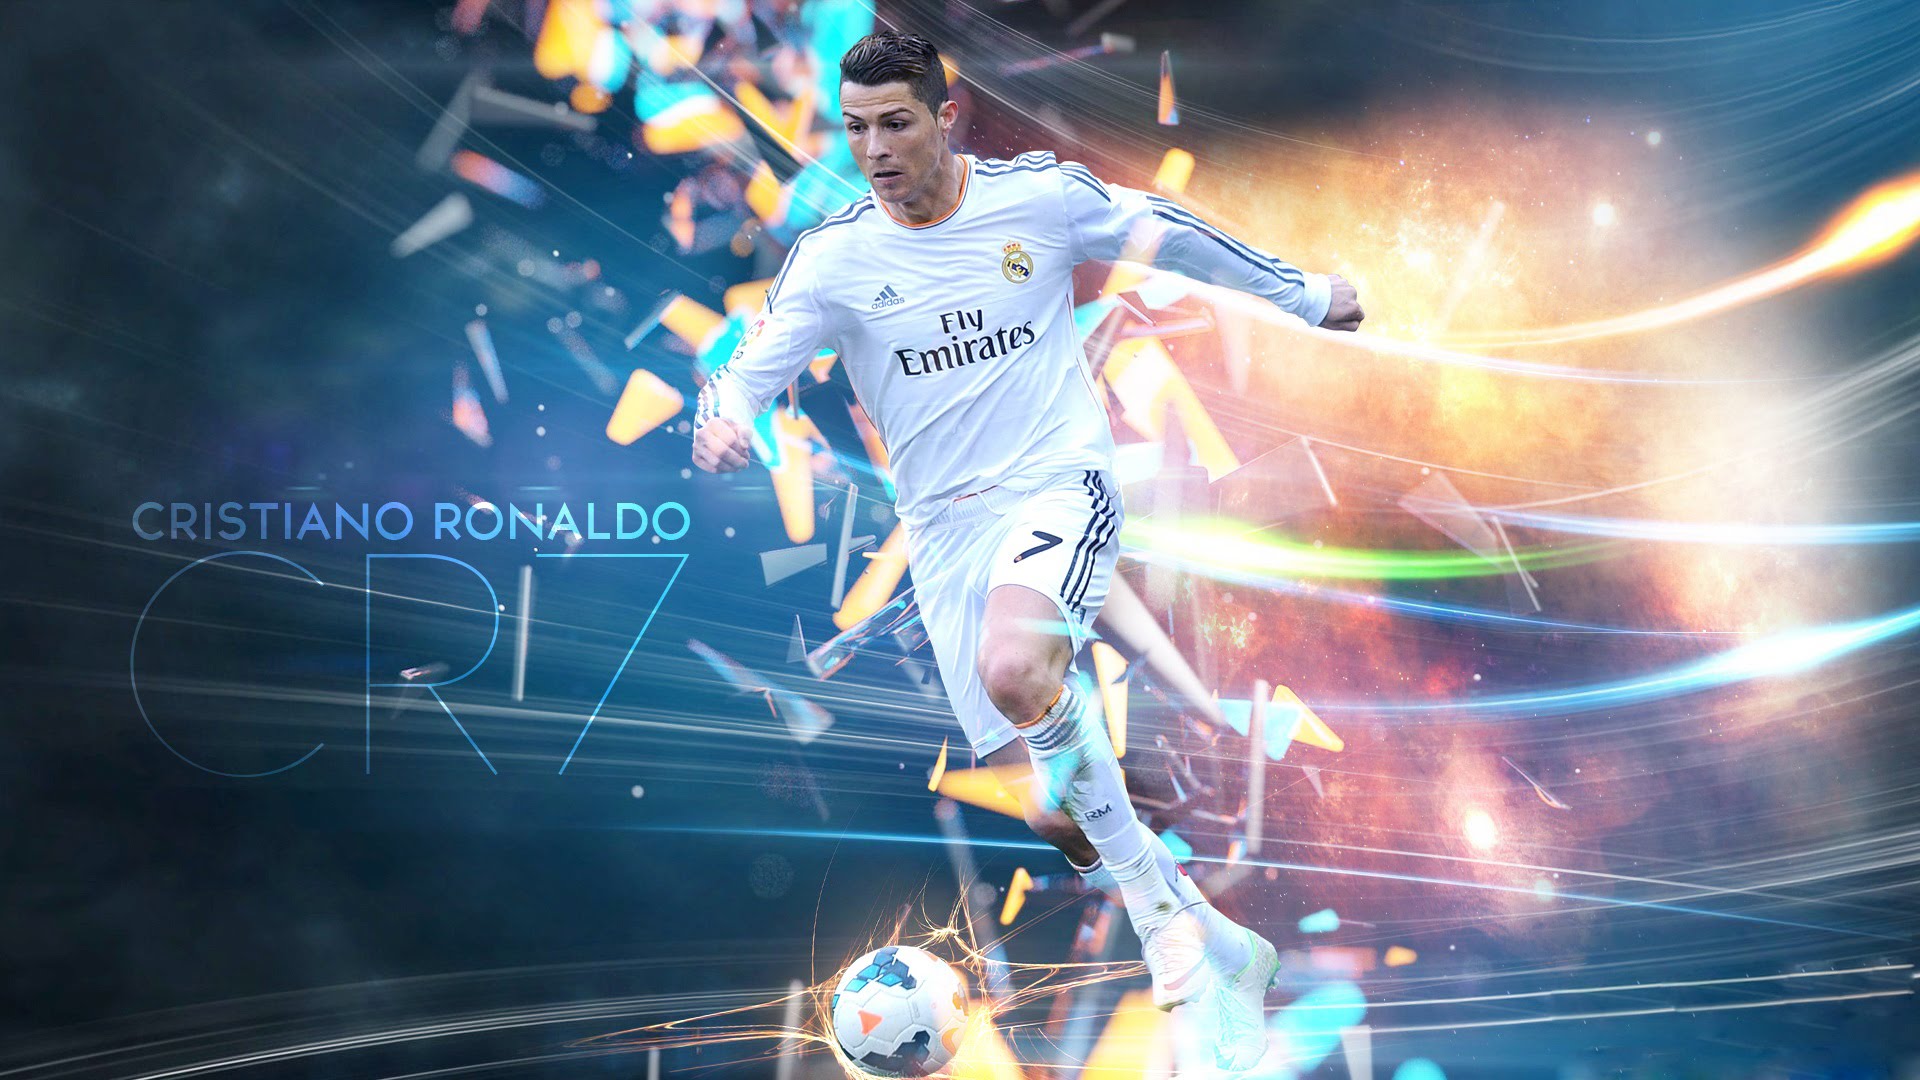 Cristiano Ronaldo Full HD Wallpaper For